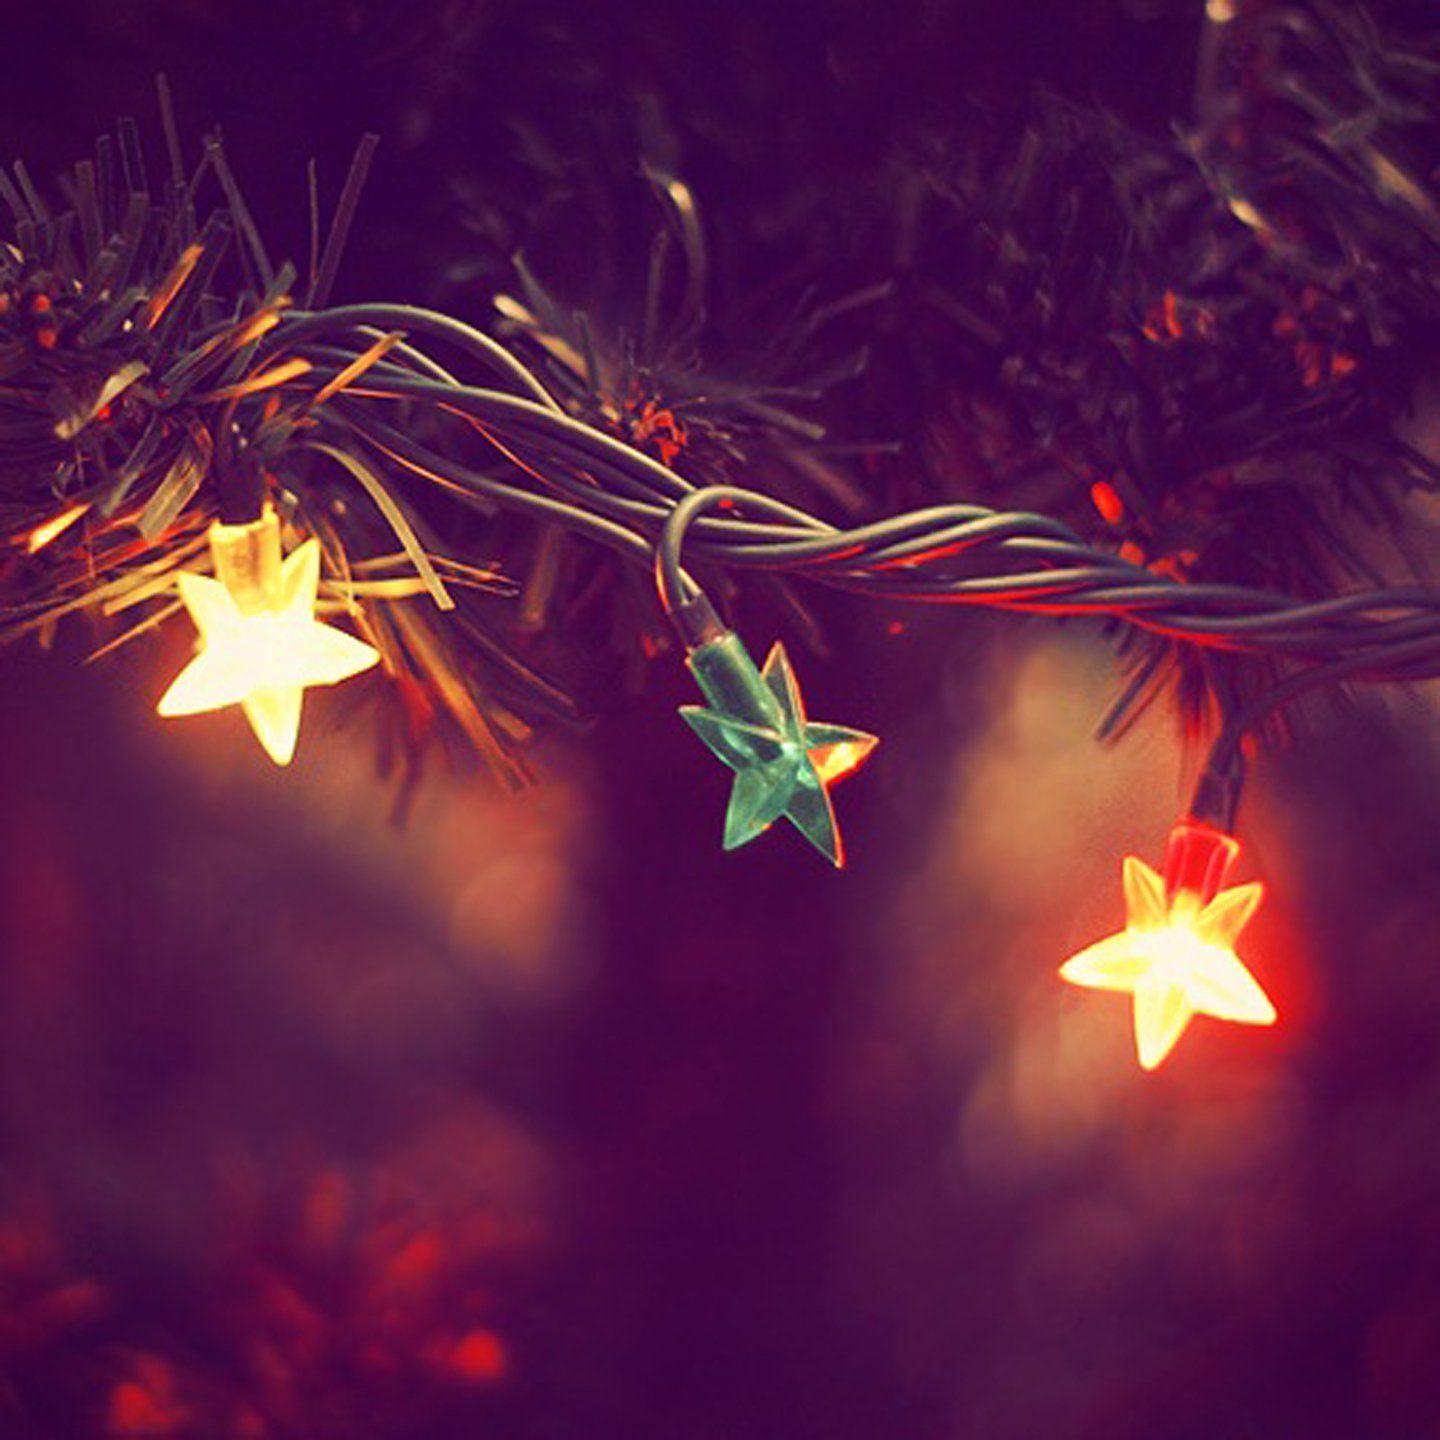 1440x1440 Hình nền ngôi sao ánh sáng trang trí cây thông Noel tuyệt đẹp.  1440x1440